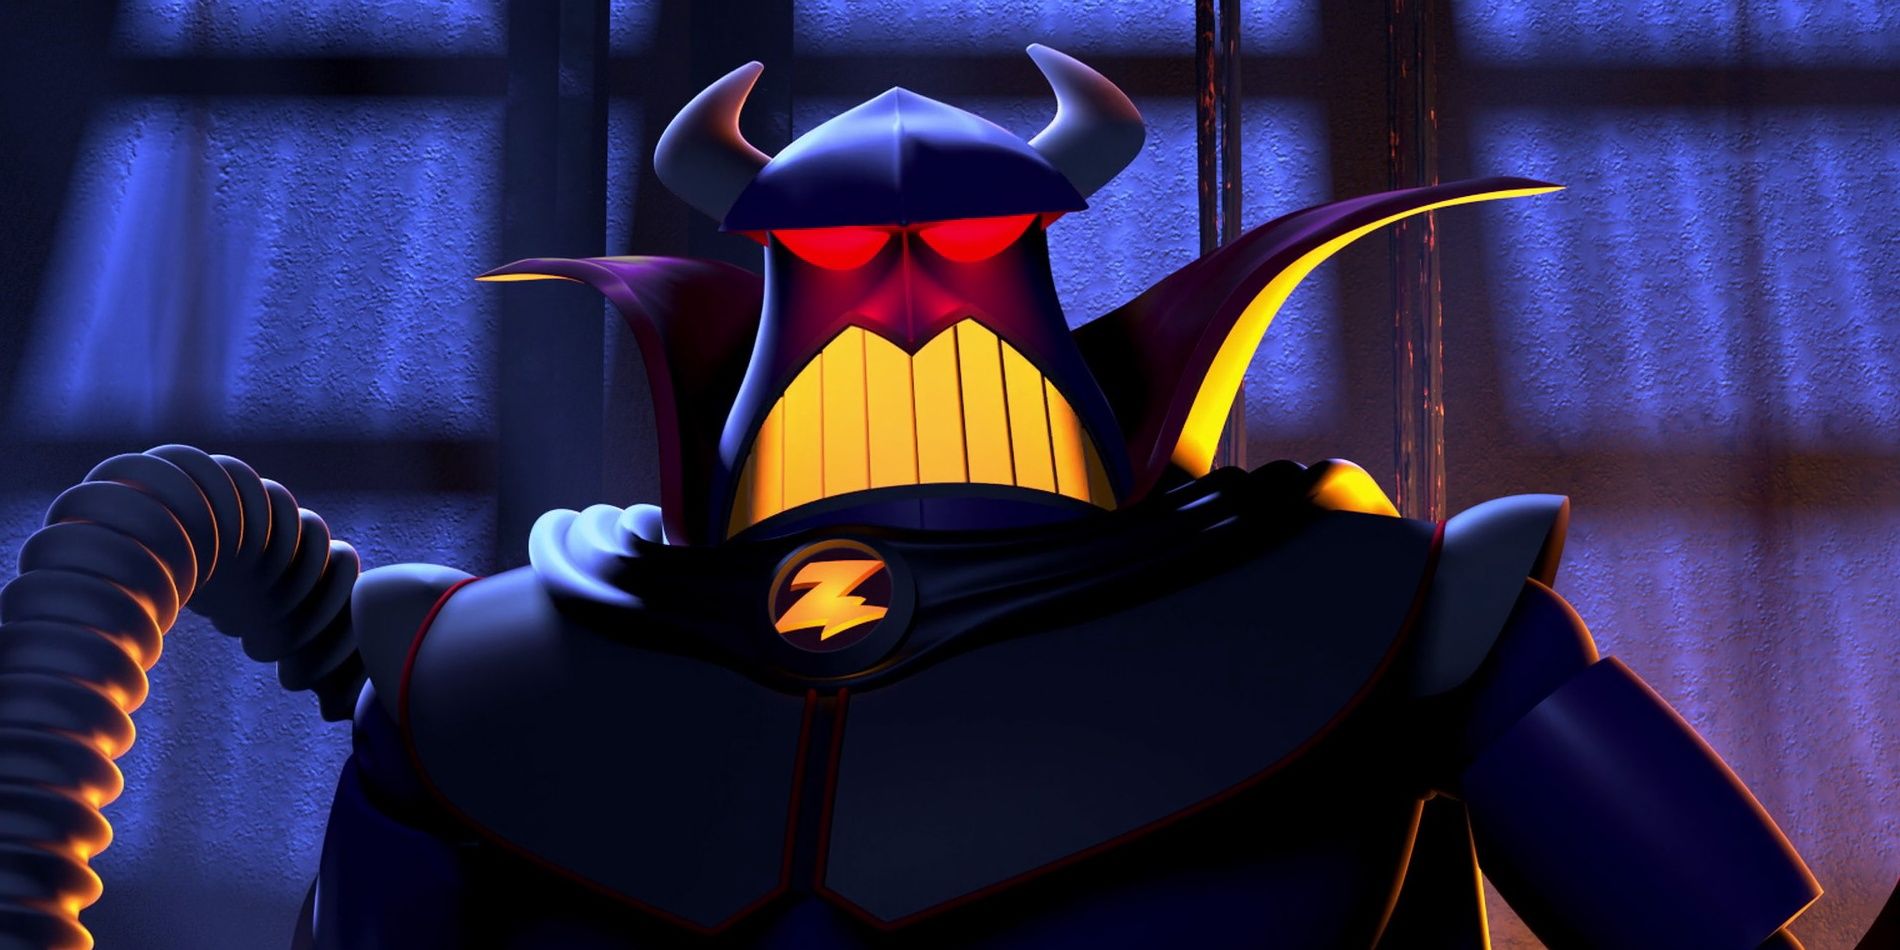 Disney Pixar evil emperor zurg toy story action figure broken